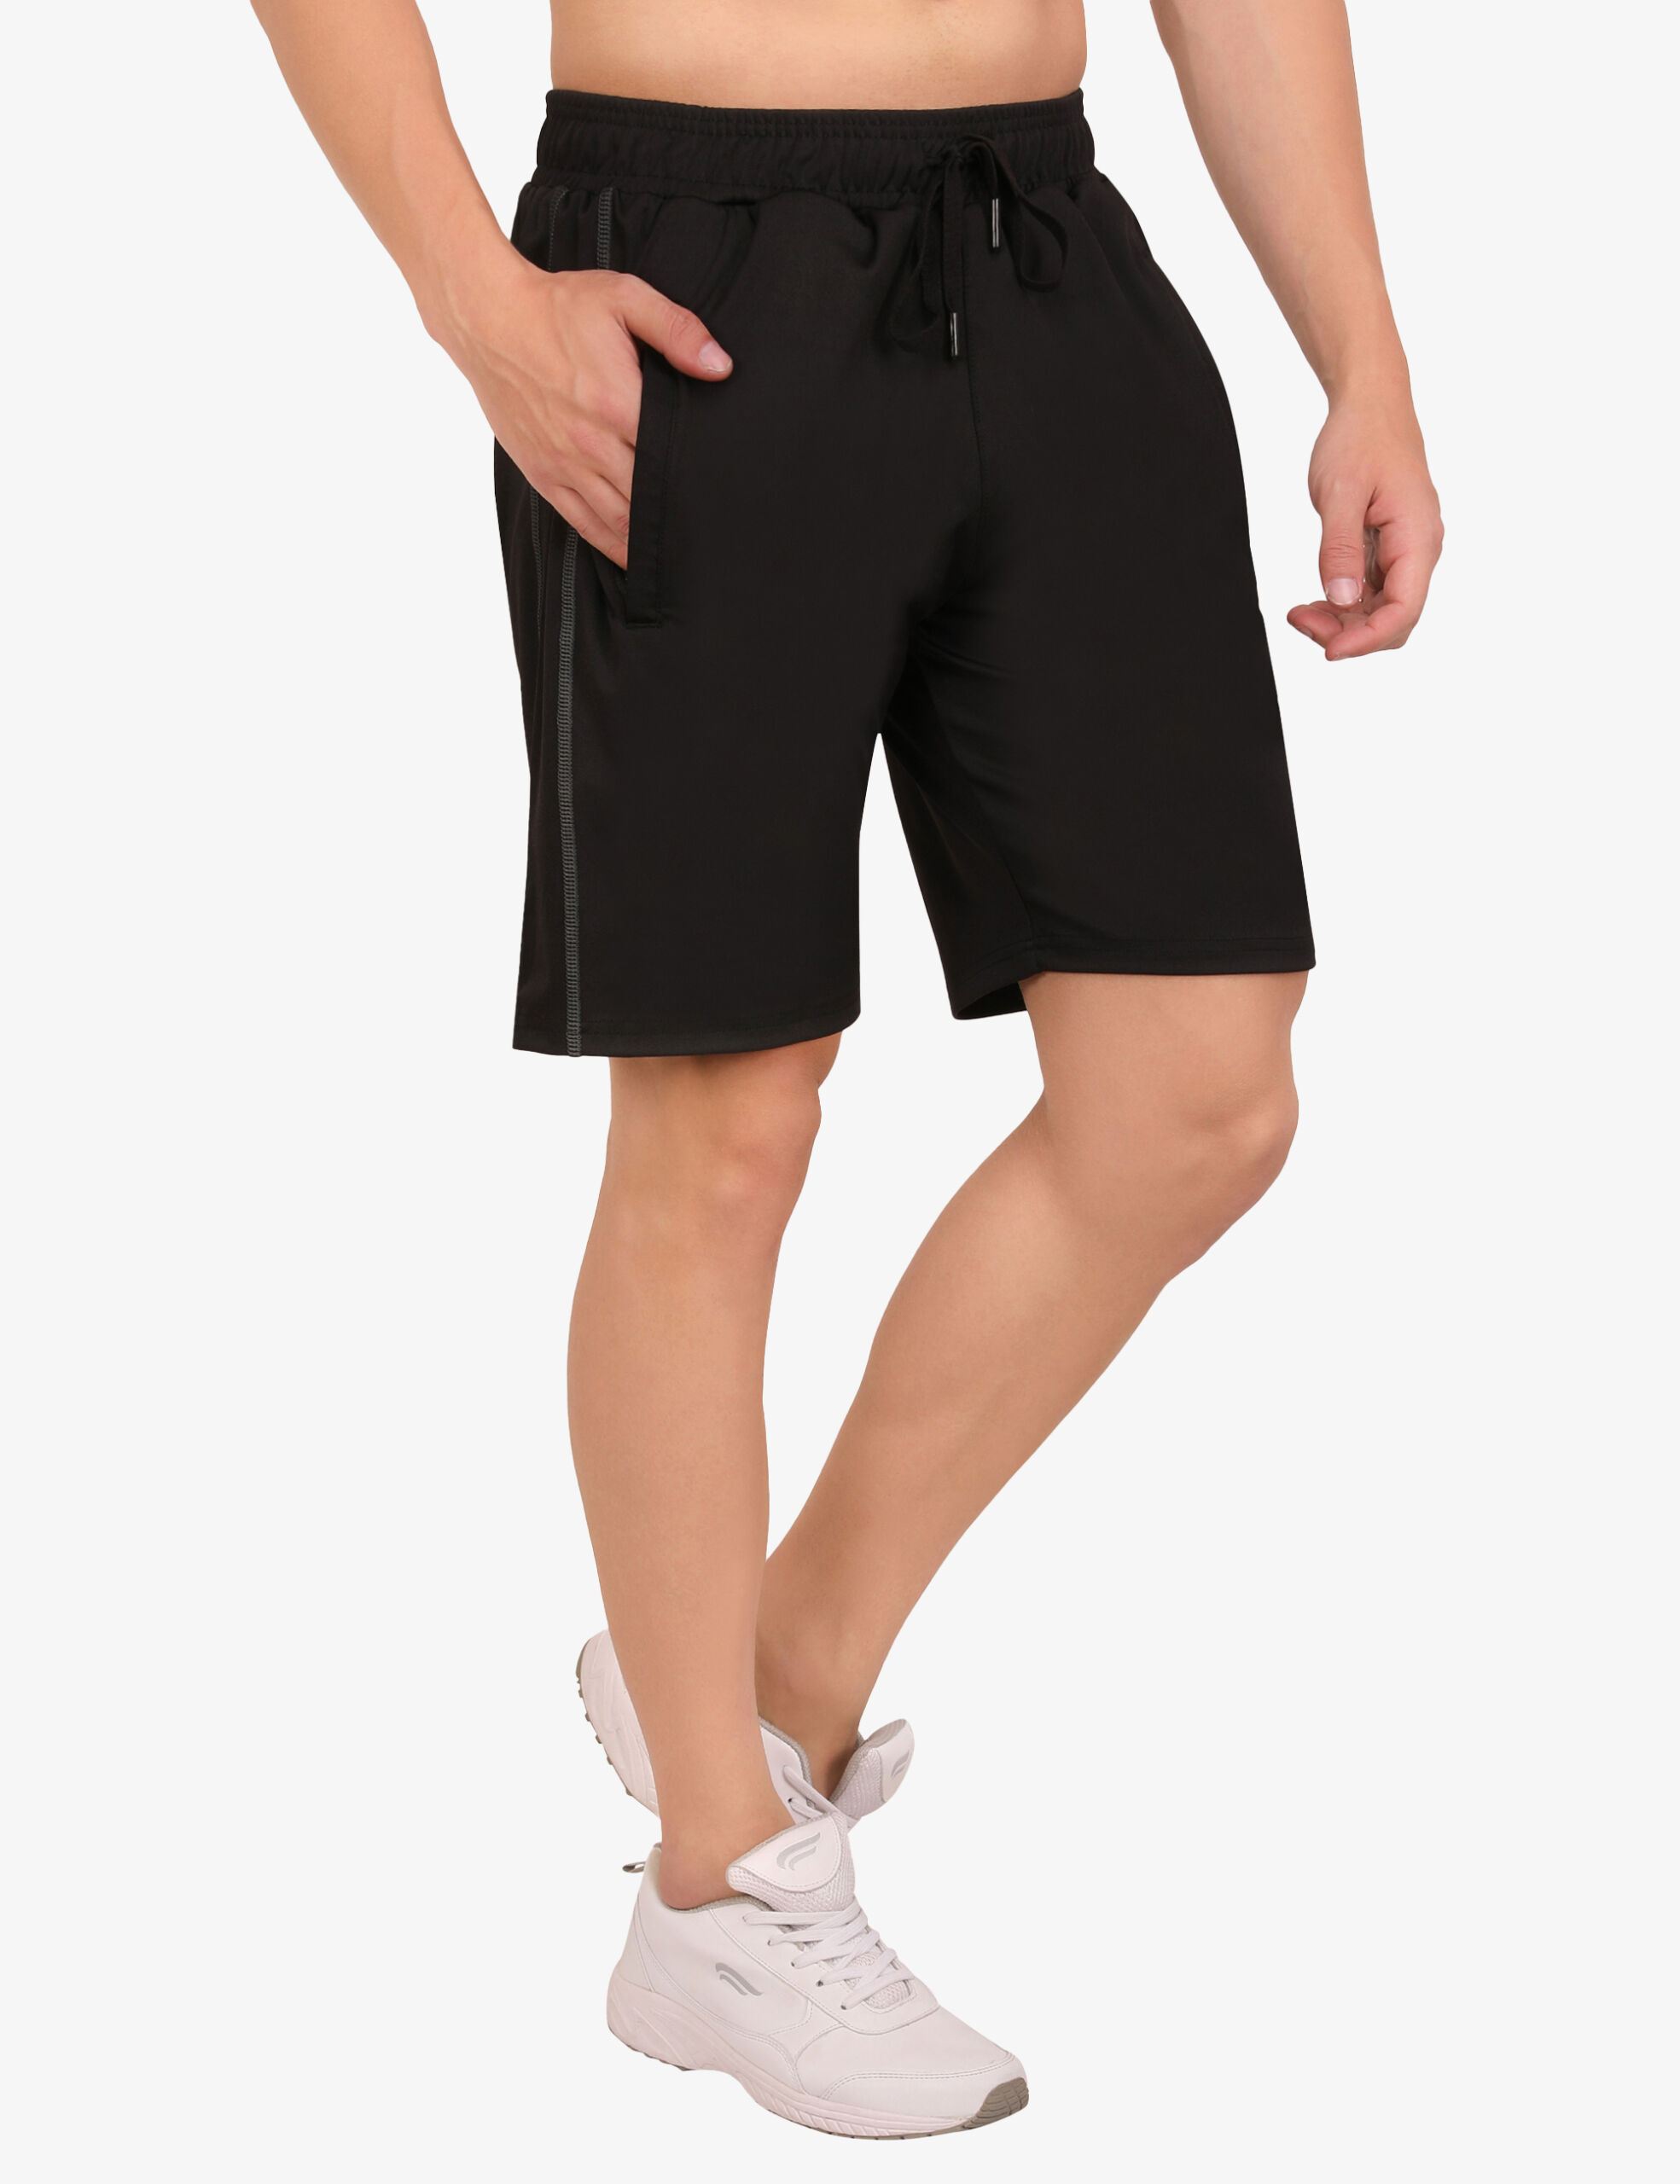 ASI Breeza Black Shorts for Men